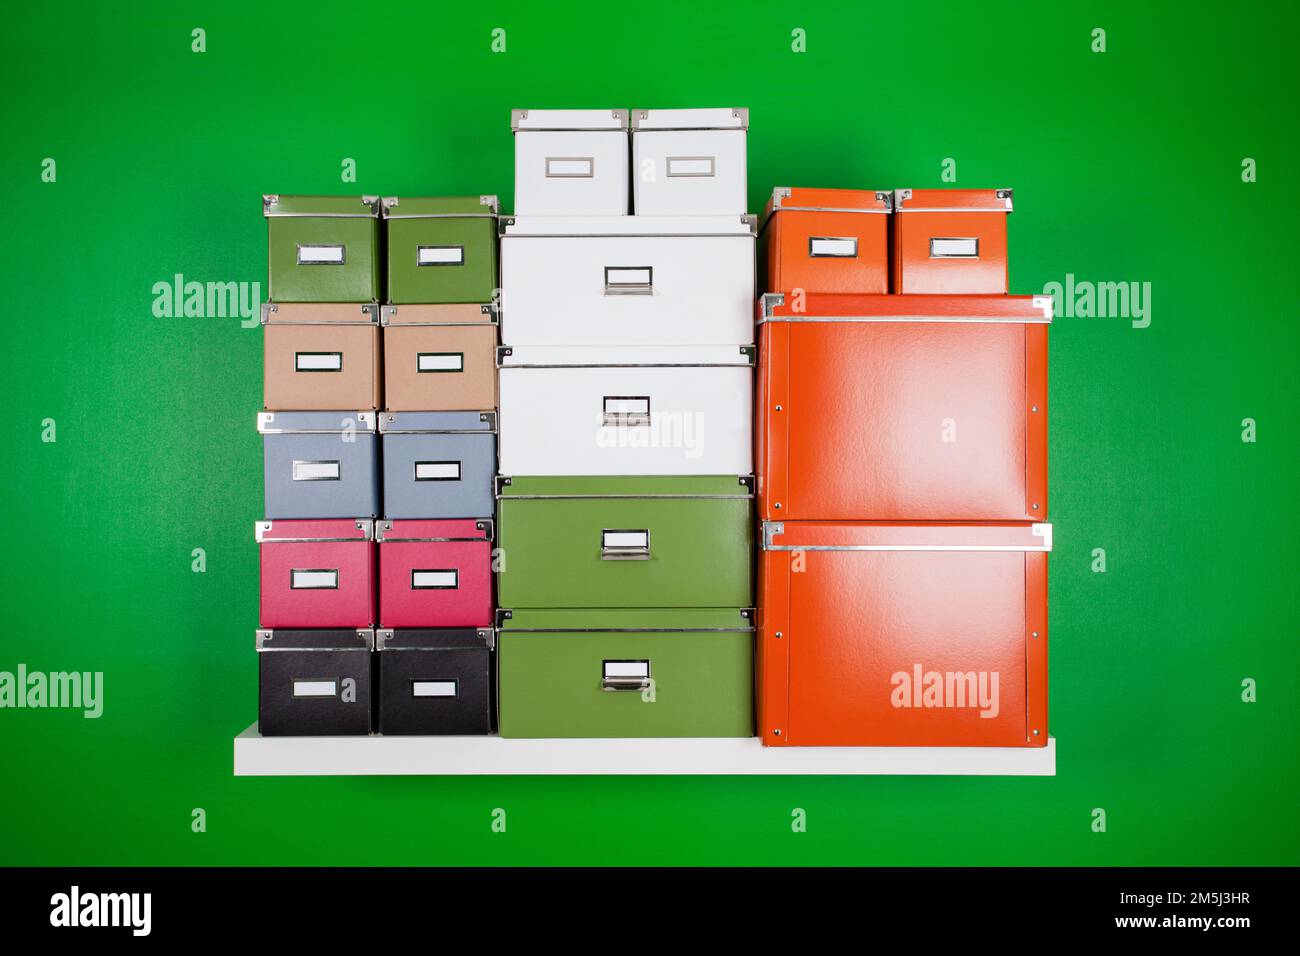 Hoher Stapel von Bürokartons in verschiedenen Farben und Größen auf einem weißen Bücherregal an einer grünen Wand. Minimalistische Kompostierungszusammensetzung Stockfoto